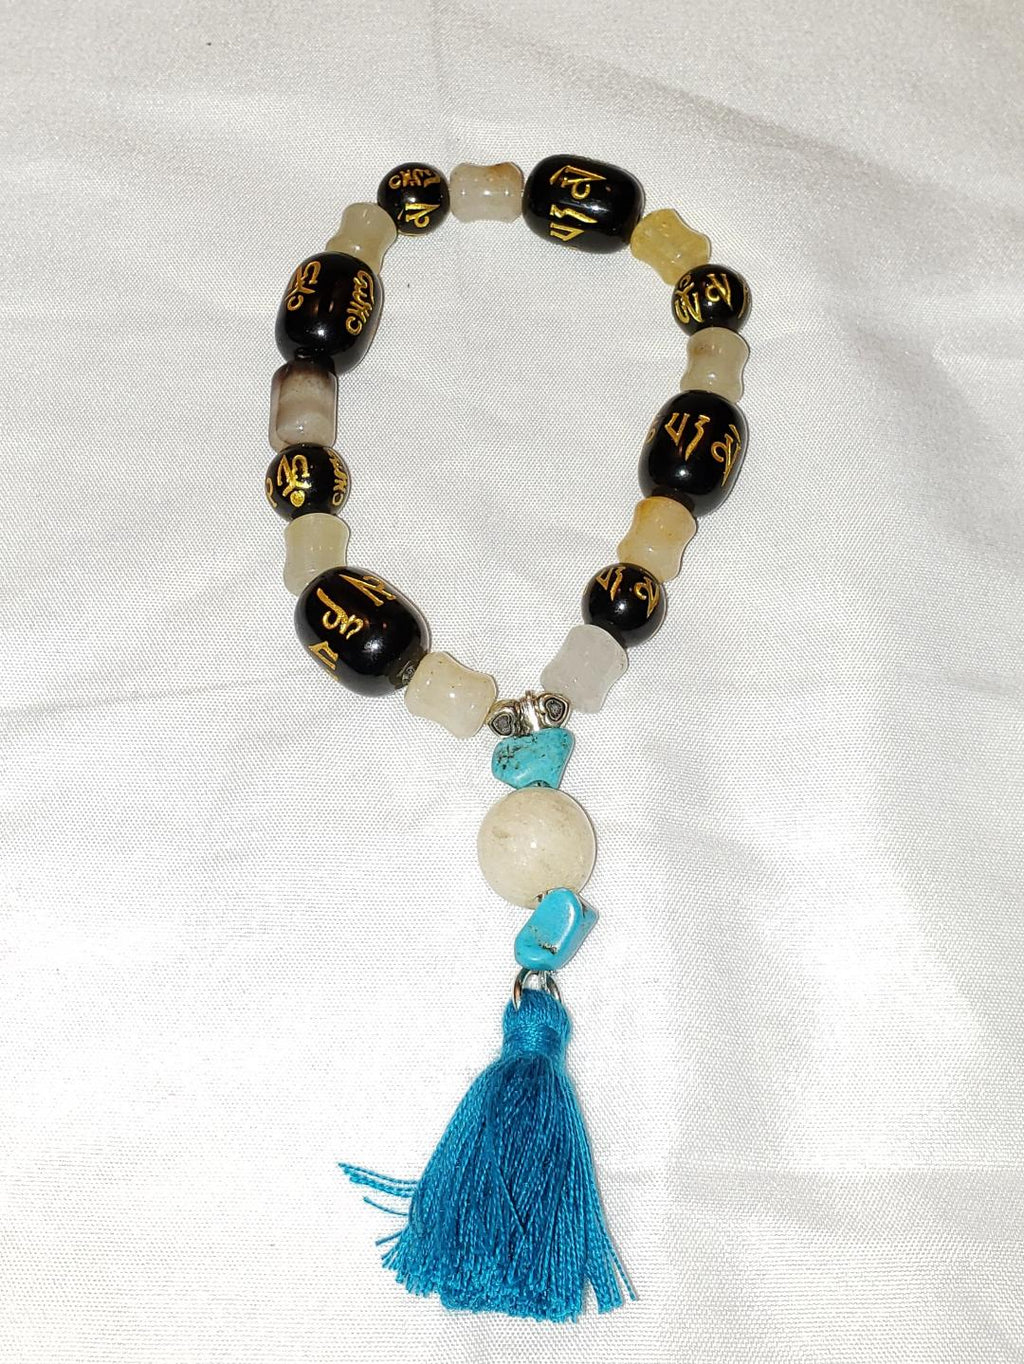 Onyx, white jade, turquoise Buddha bracelet with tassel